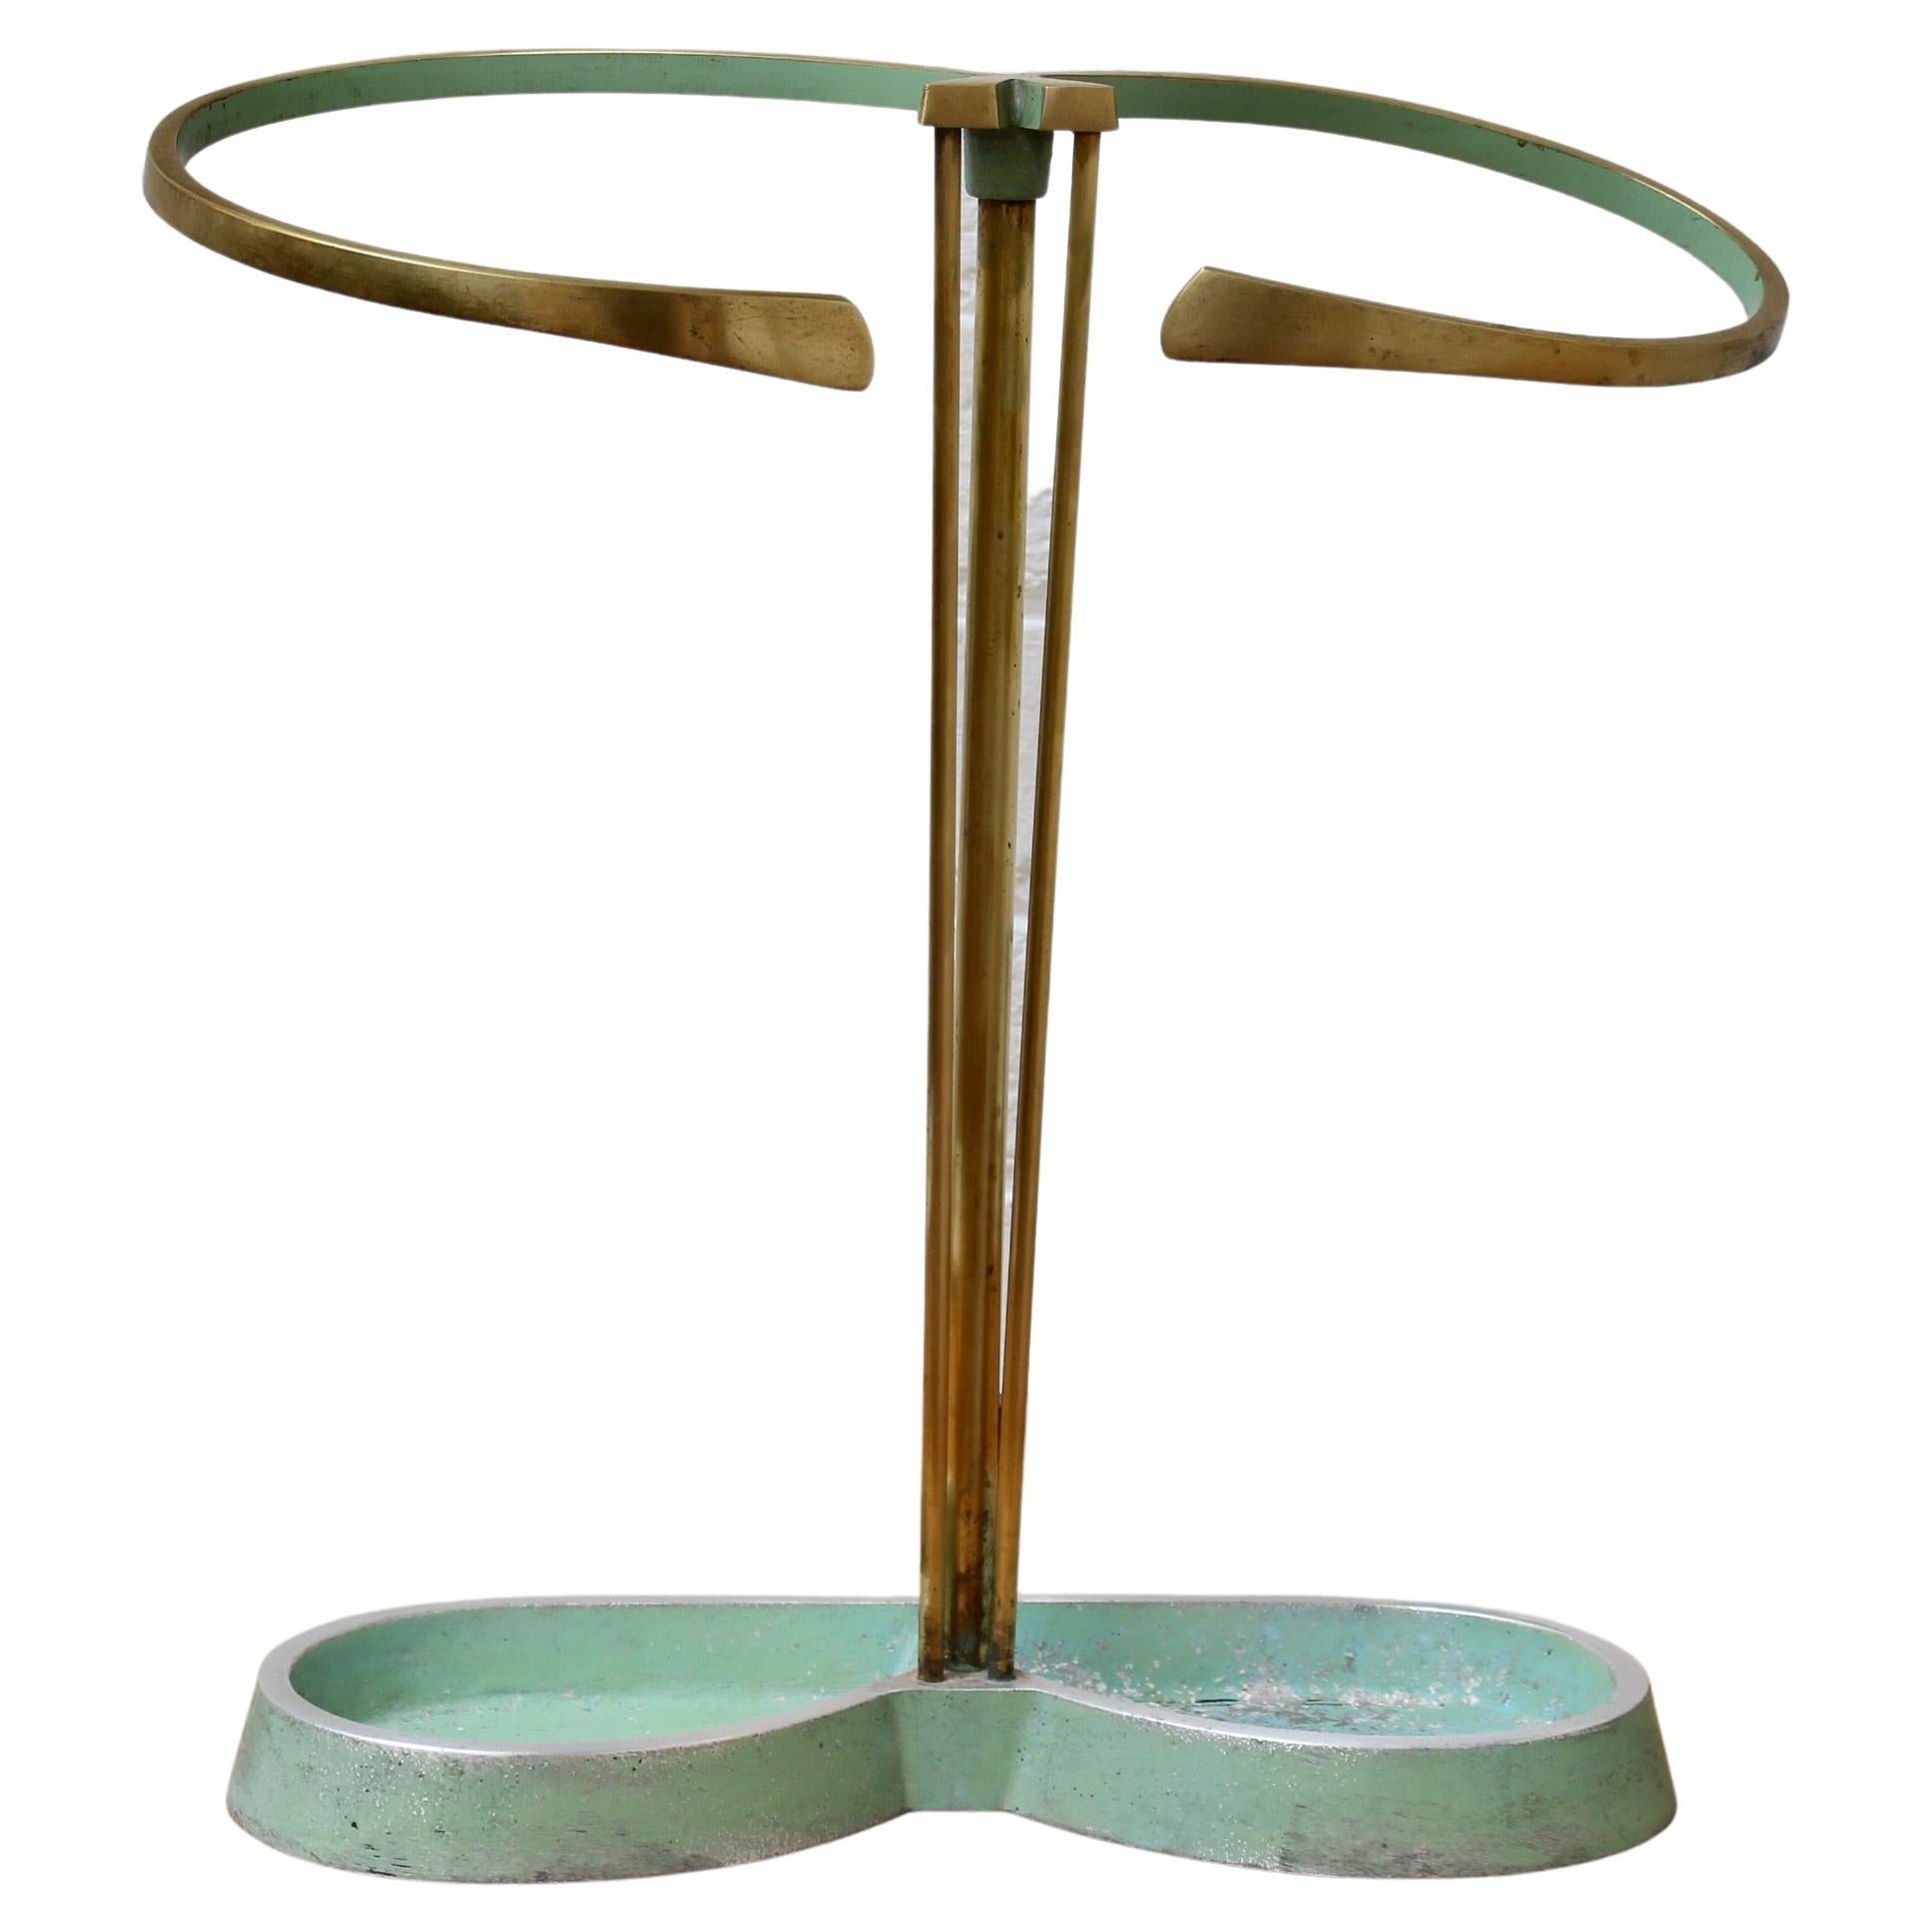 Midcentury Modern Brass Umbrella Stand Attributed to Artes H&H Seefried Steppach